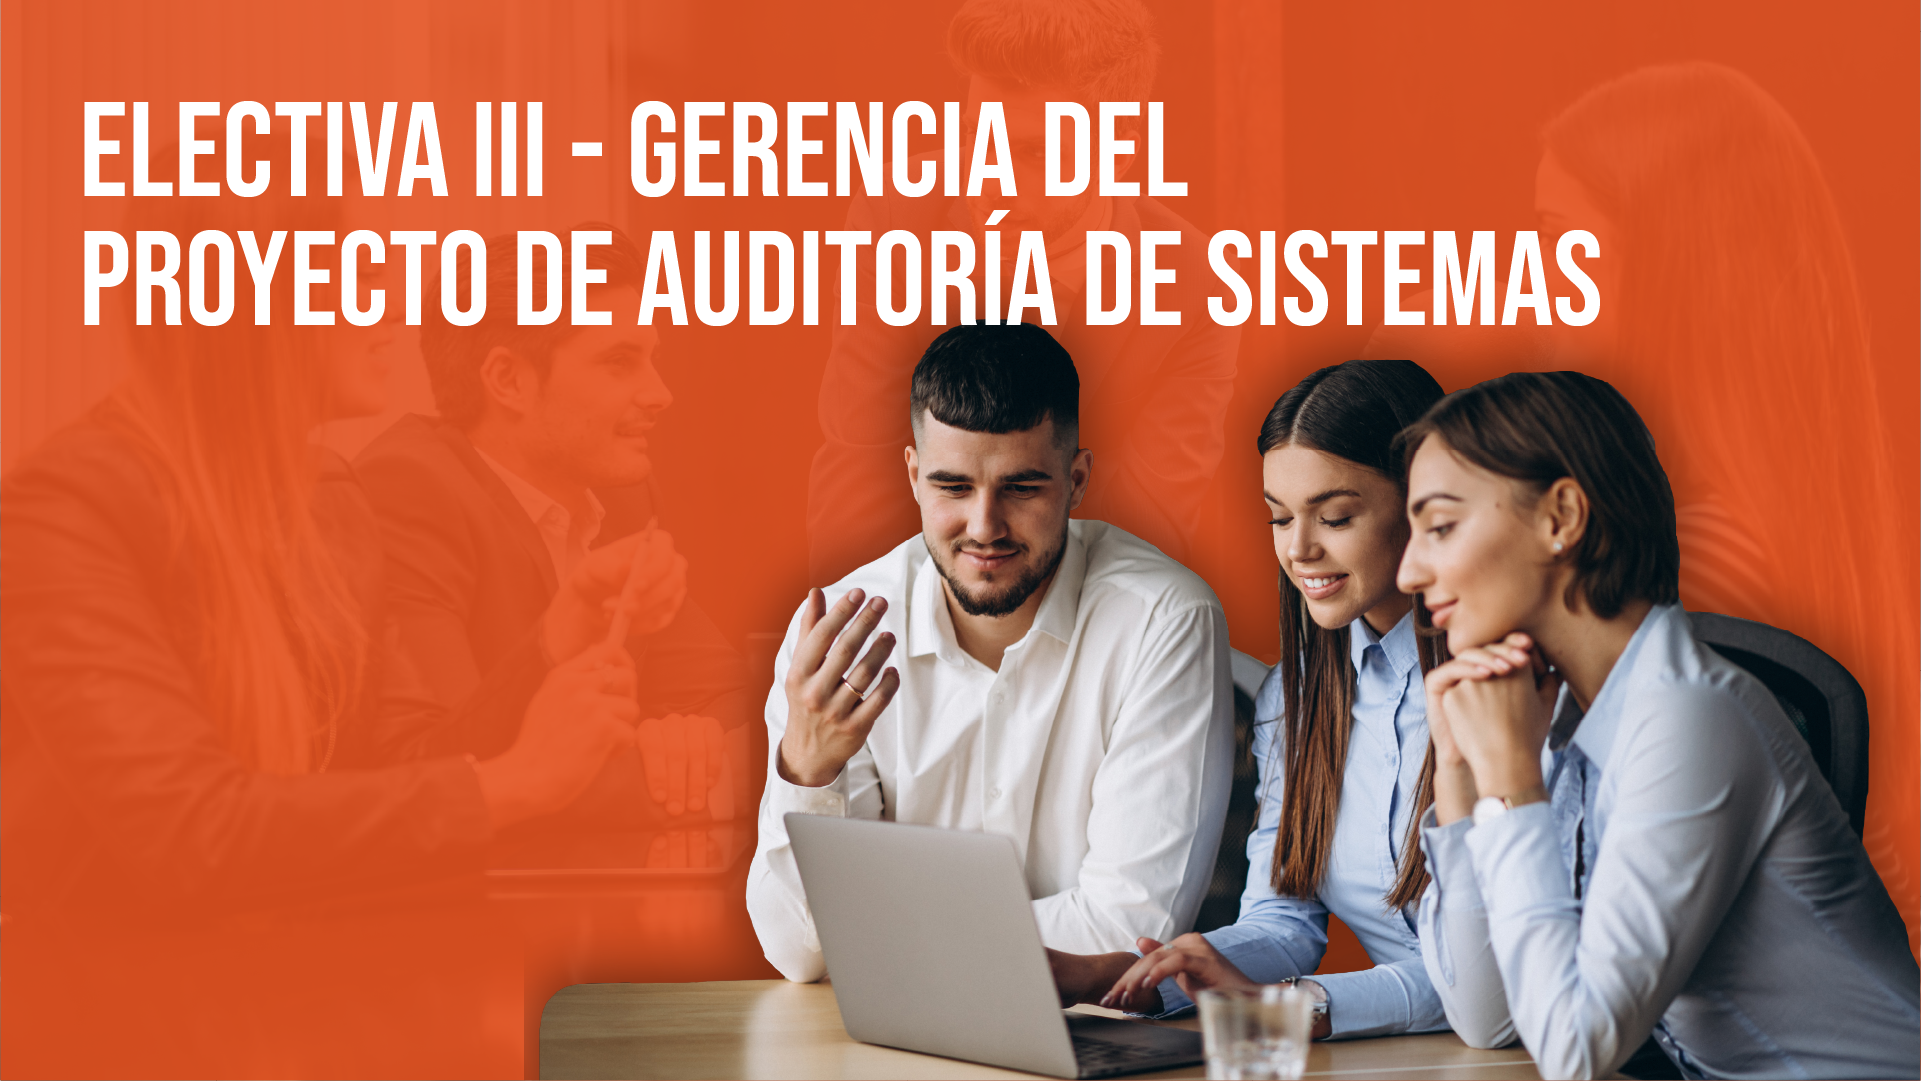 Electiva III - Gerencia del Proyecto de Auditoría de Sistemas.